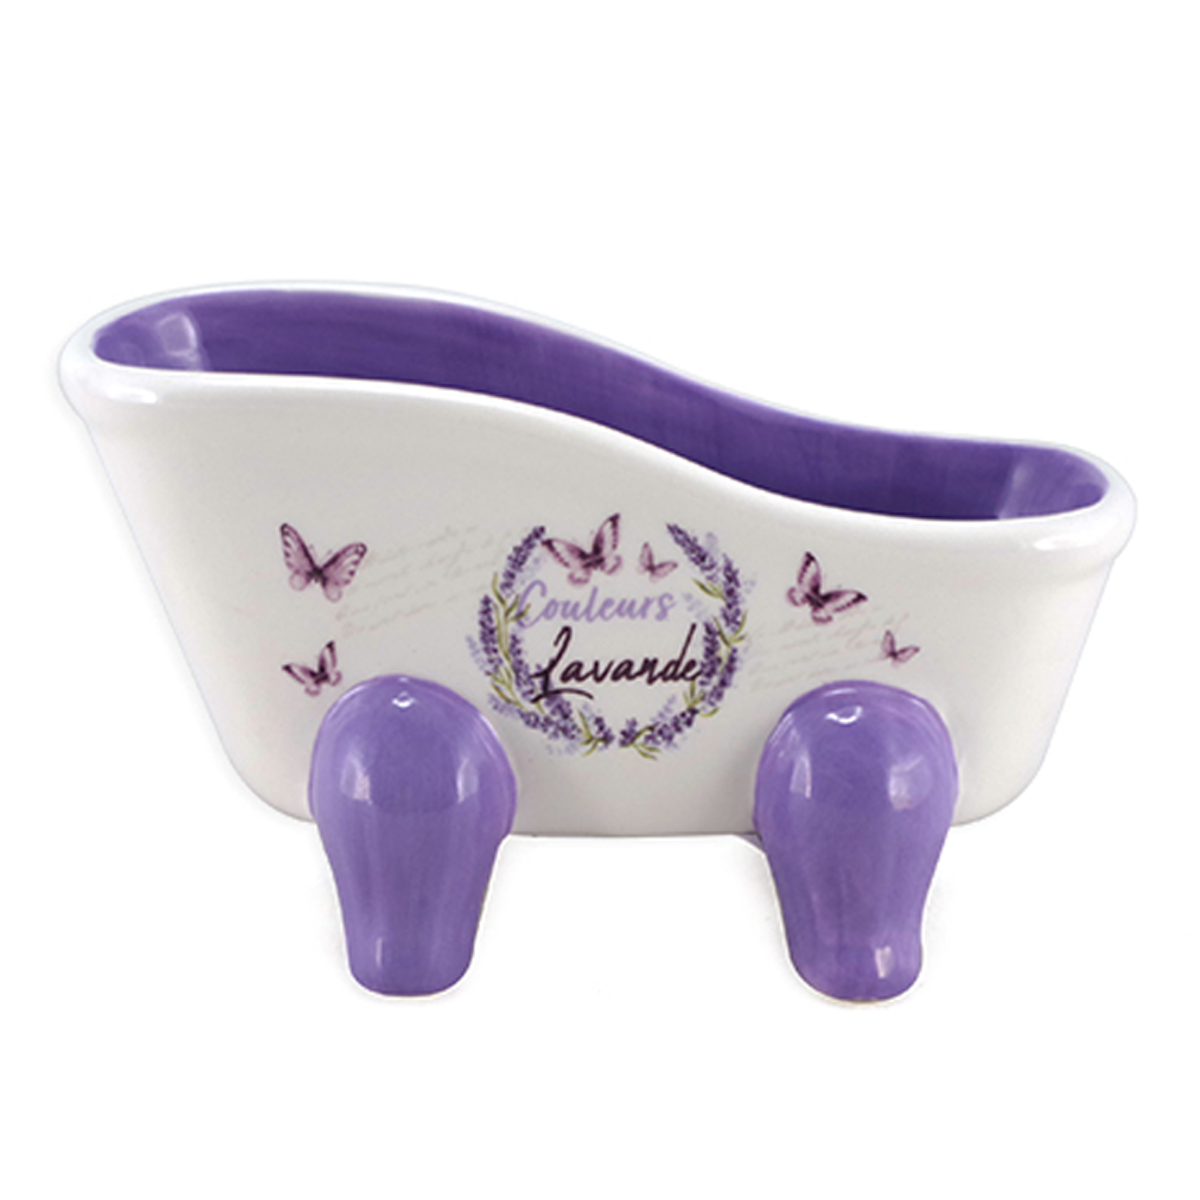 Porte-savon céramique \'Couleurs Lavande\' violet blanc (baignoire rétro) - 130x75 mm - [A2553]